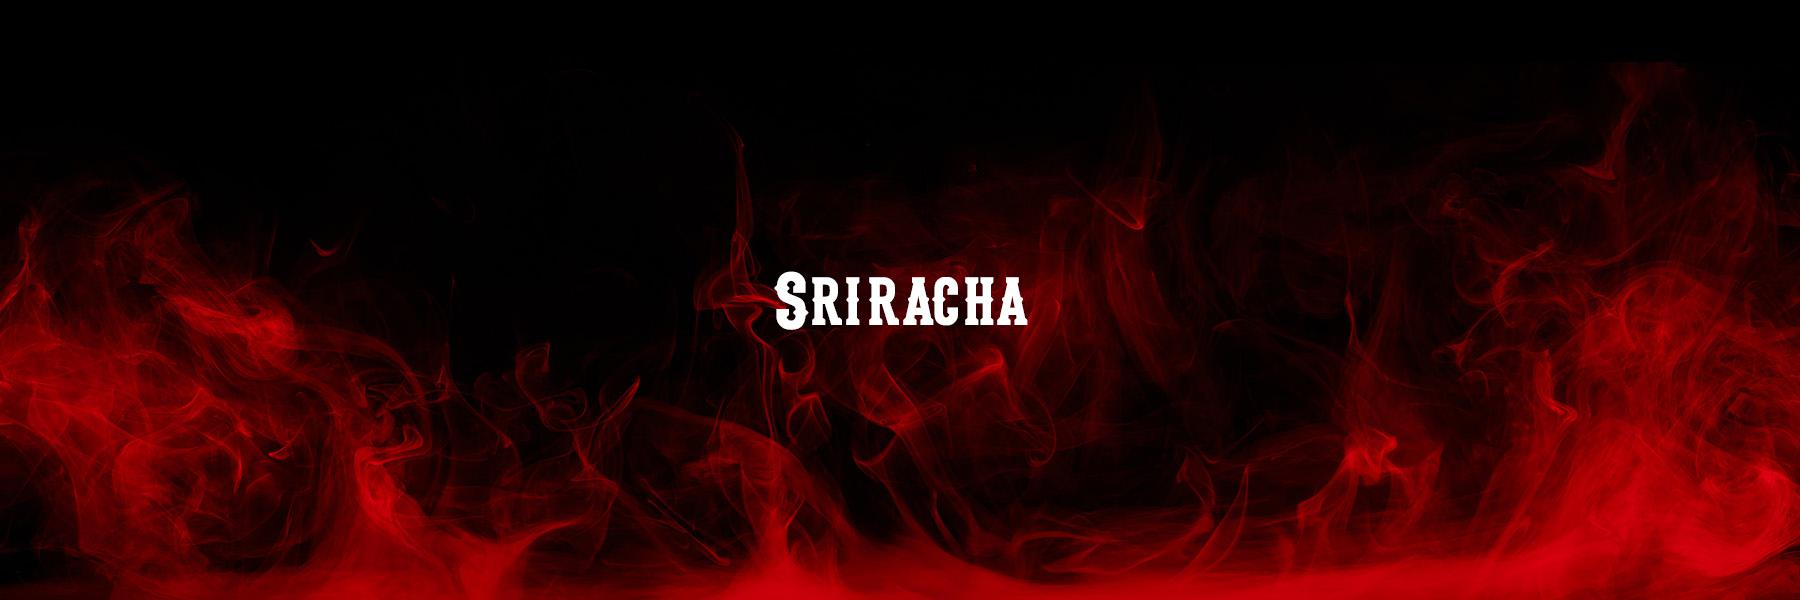 Sriracha Products